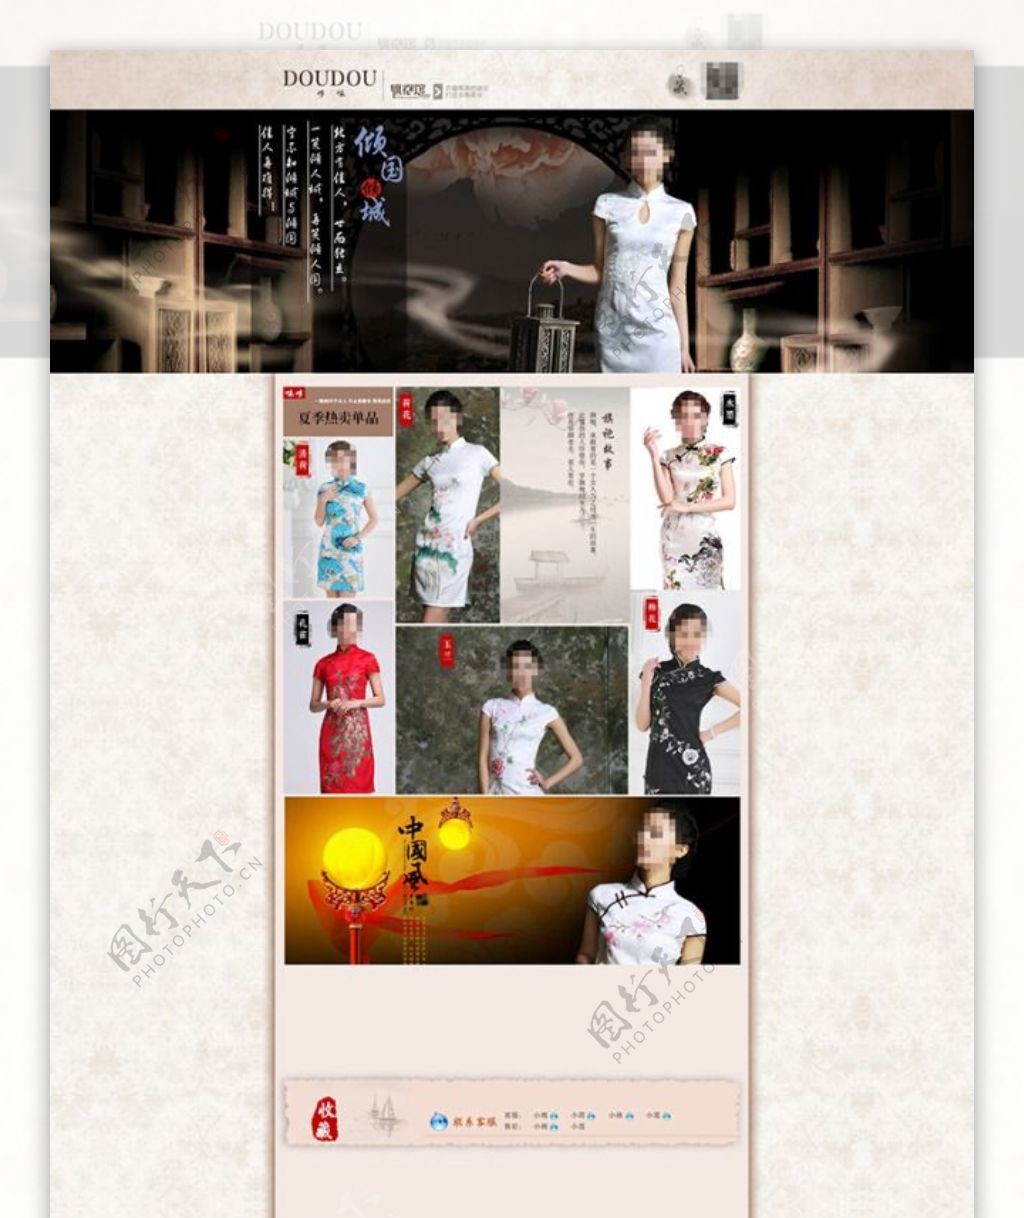 中国风古典旗袍女装促销海报